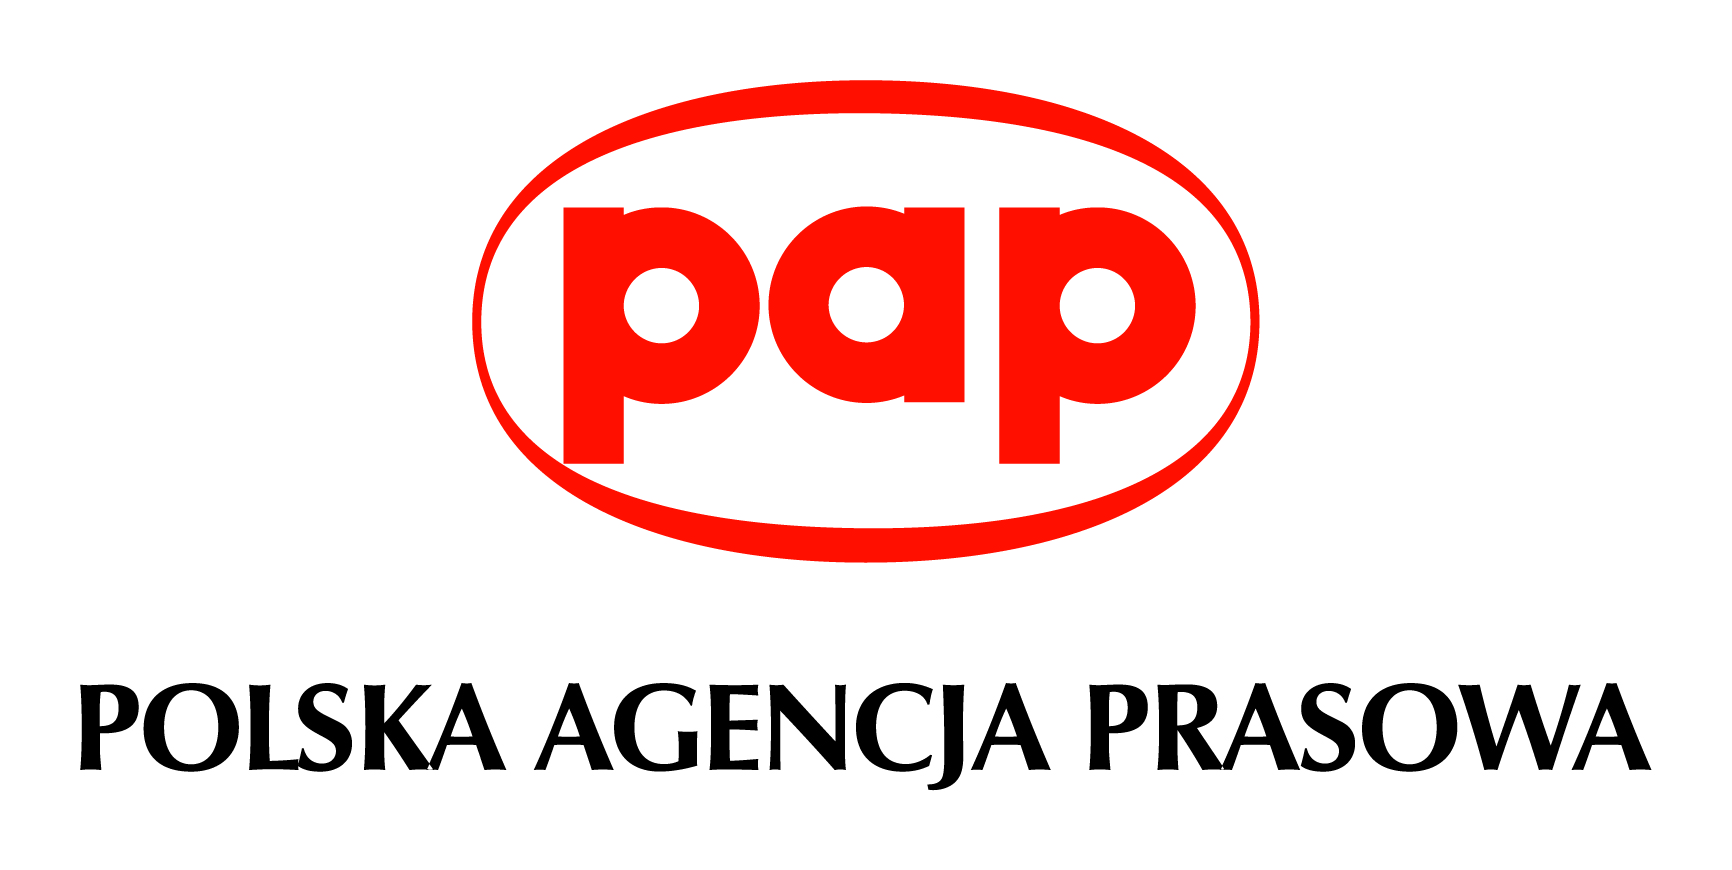 2016 logo_PAP_s